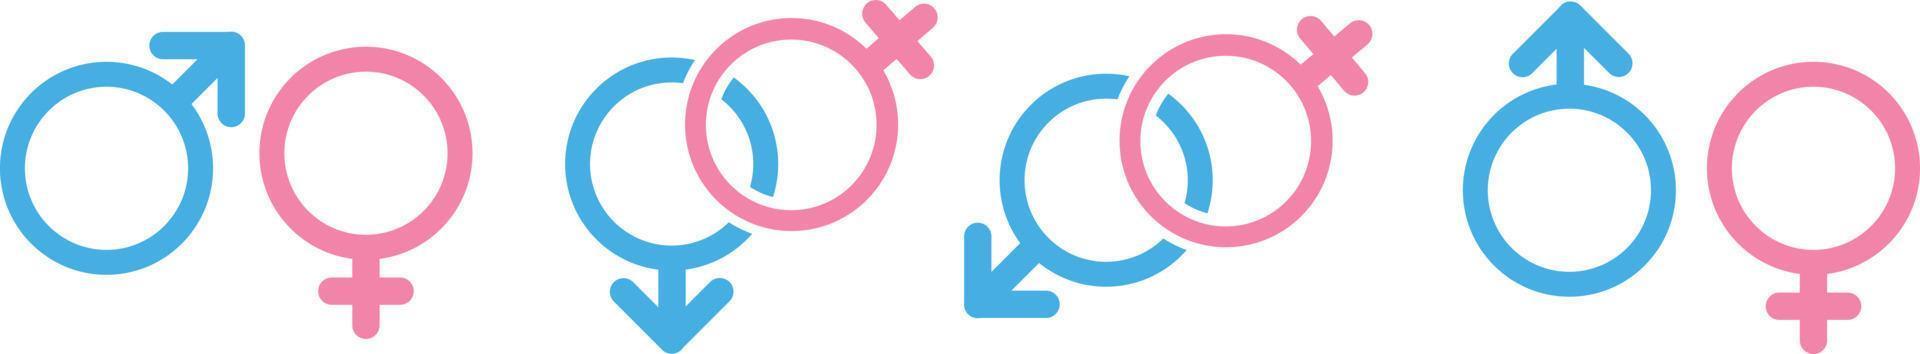 geslacht icon set, mannelijk en vrouwelijk teken, mannen en vrouwen symbool vector